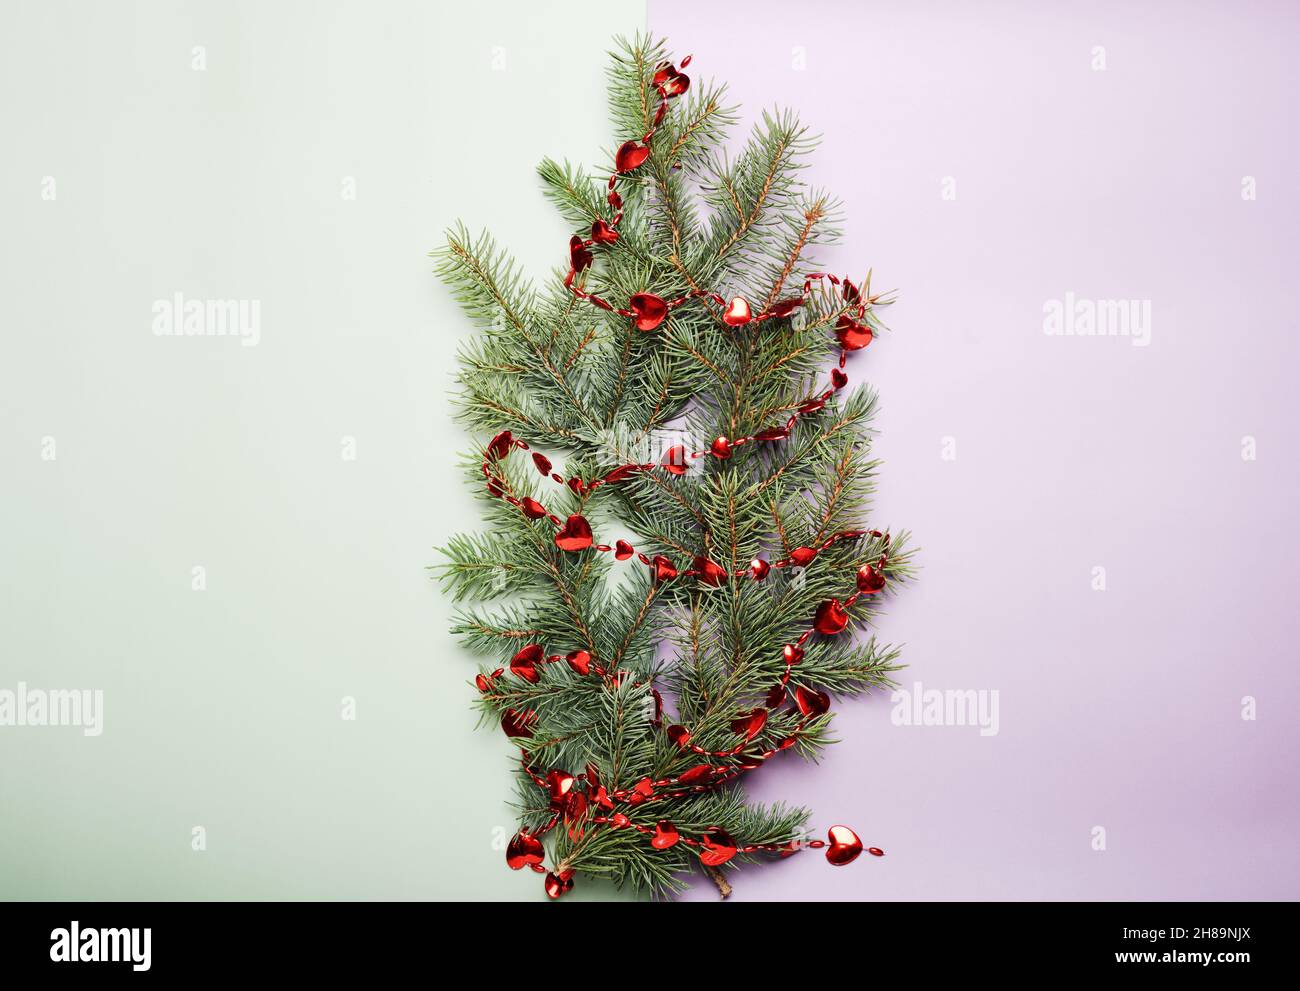 Weihnachtskonzept, grüne Kiefernzweige mit kleinen roten Herzen Dekor auf einem hellgrünen und lila Hintergrund. Leerer Raum für Text. Stockfoto